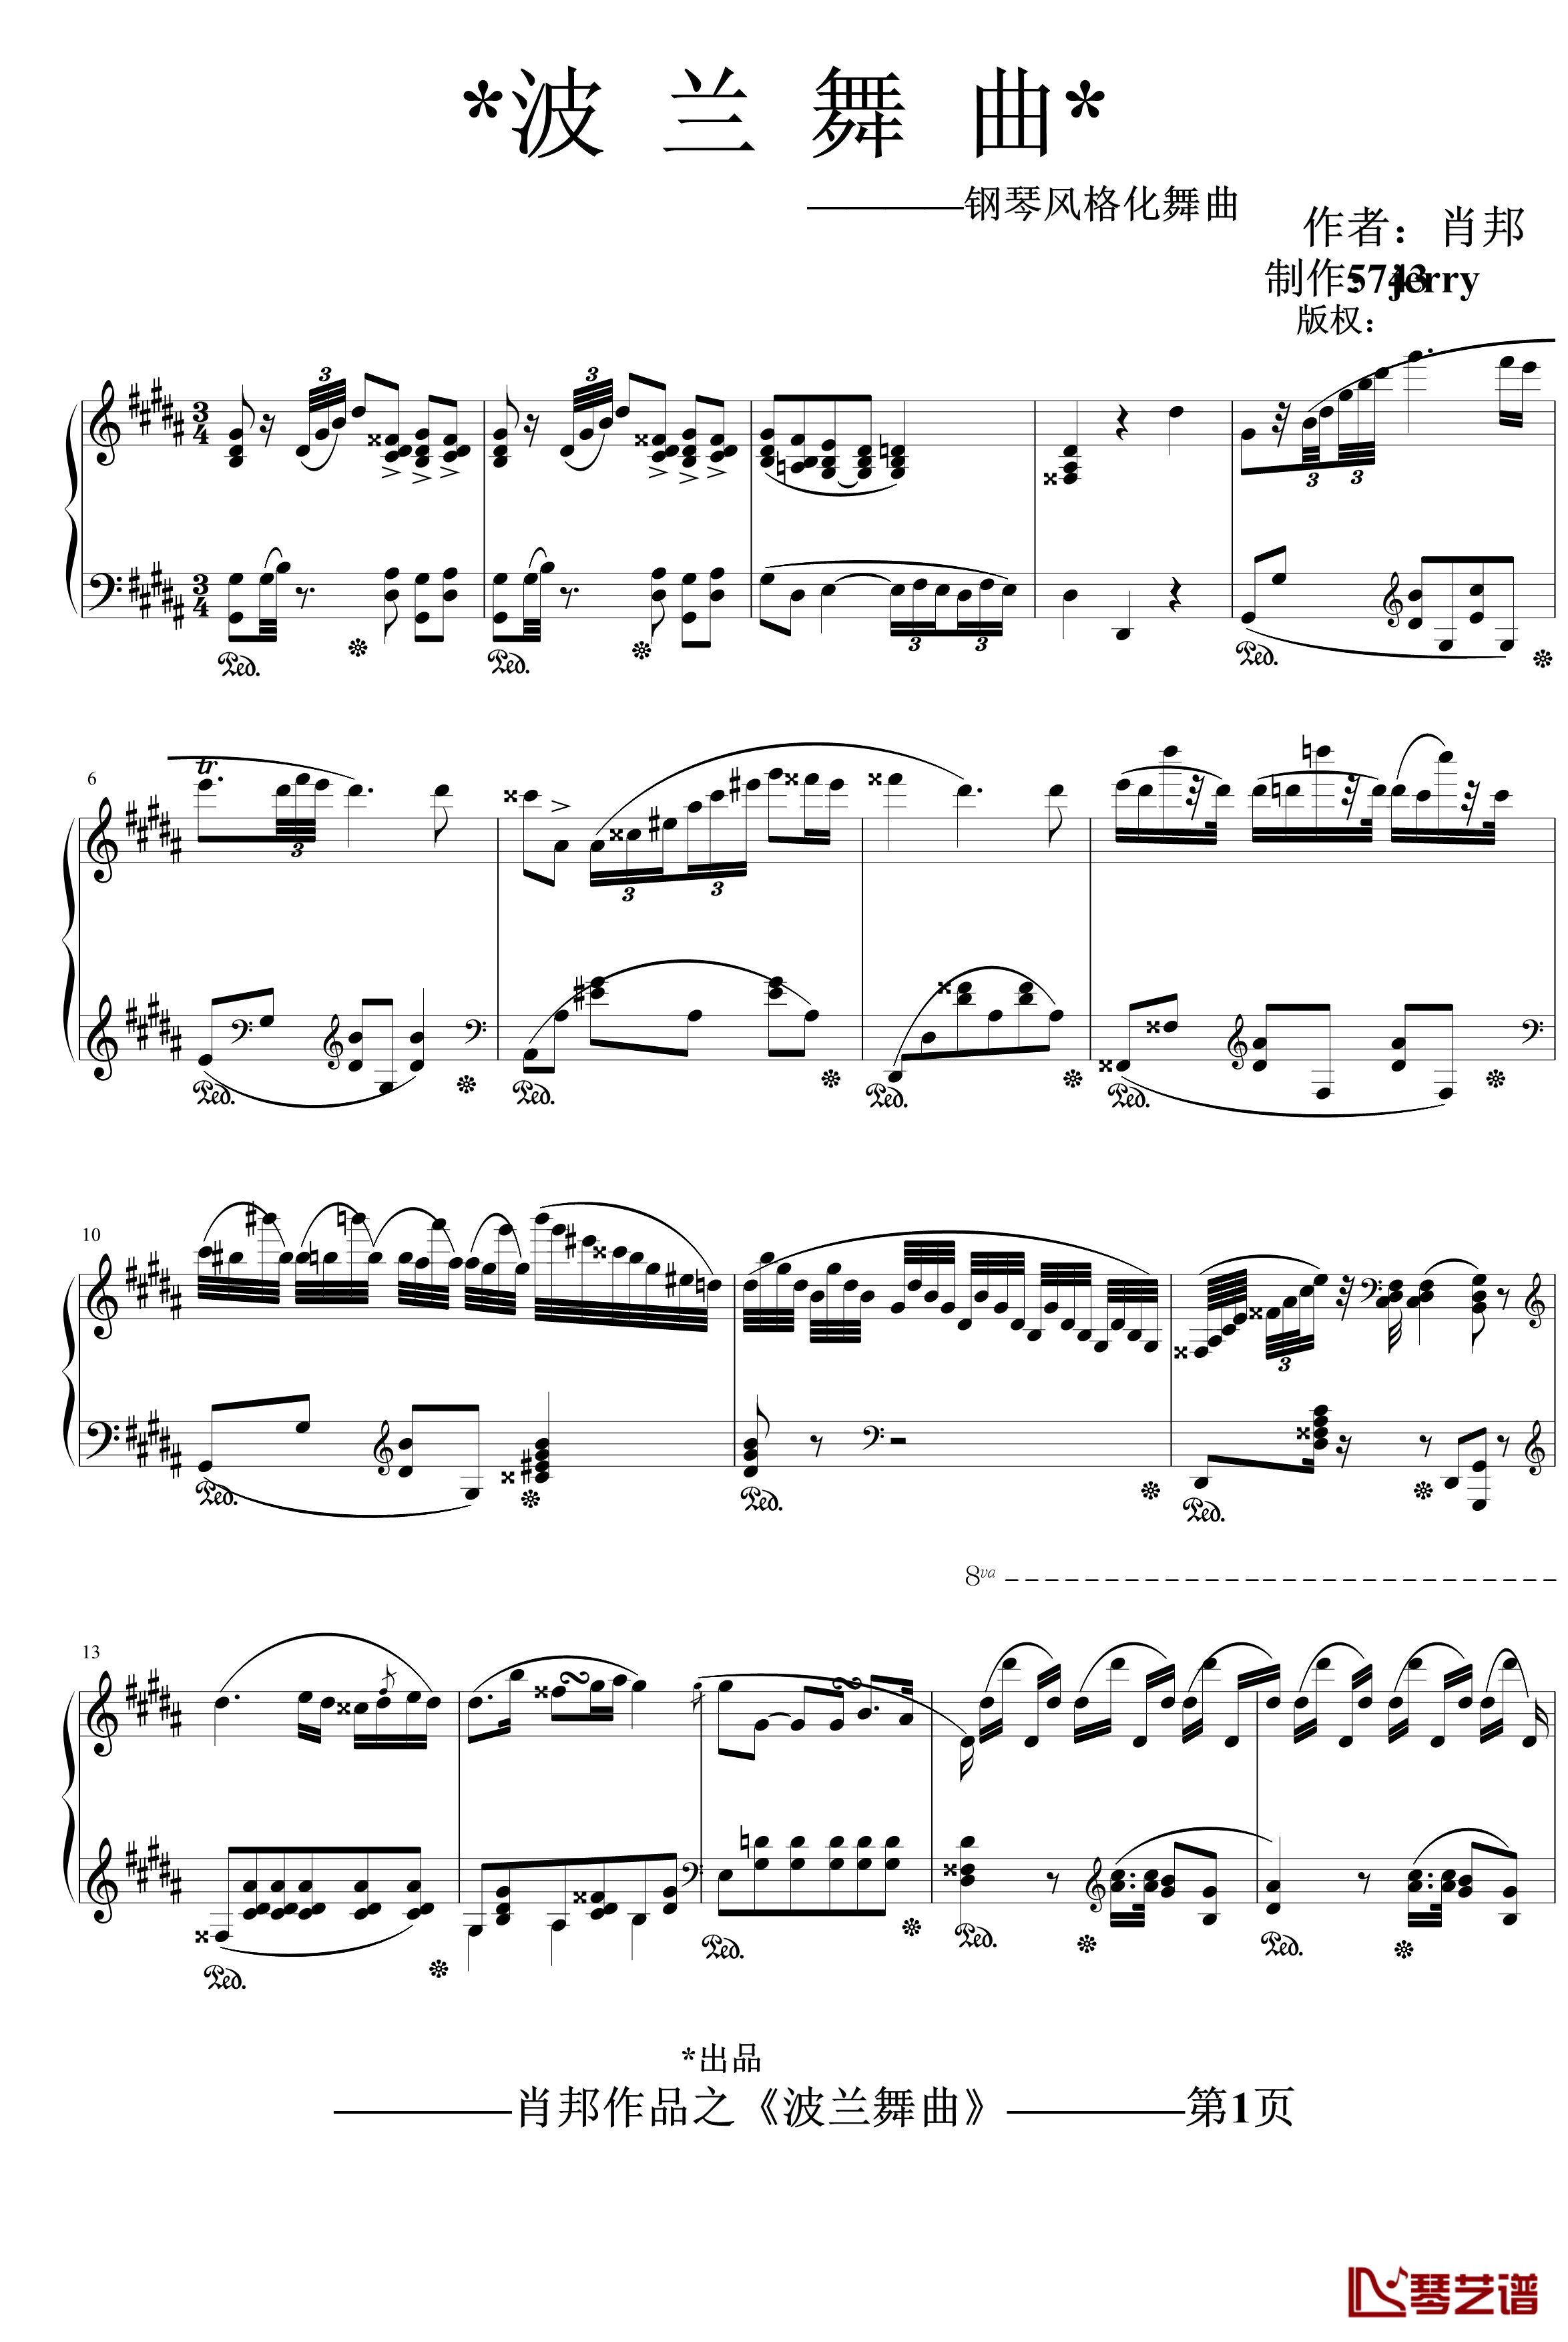 波兰舞曲钢琴谱-再制作-肖邦-chopin1